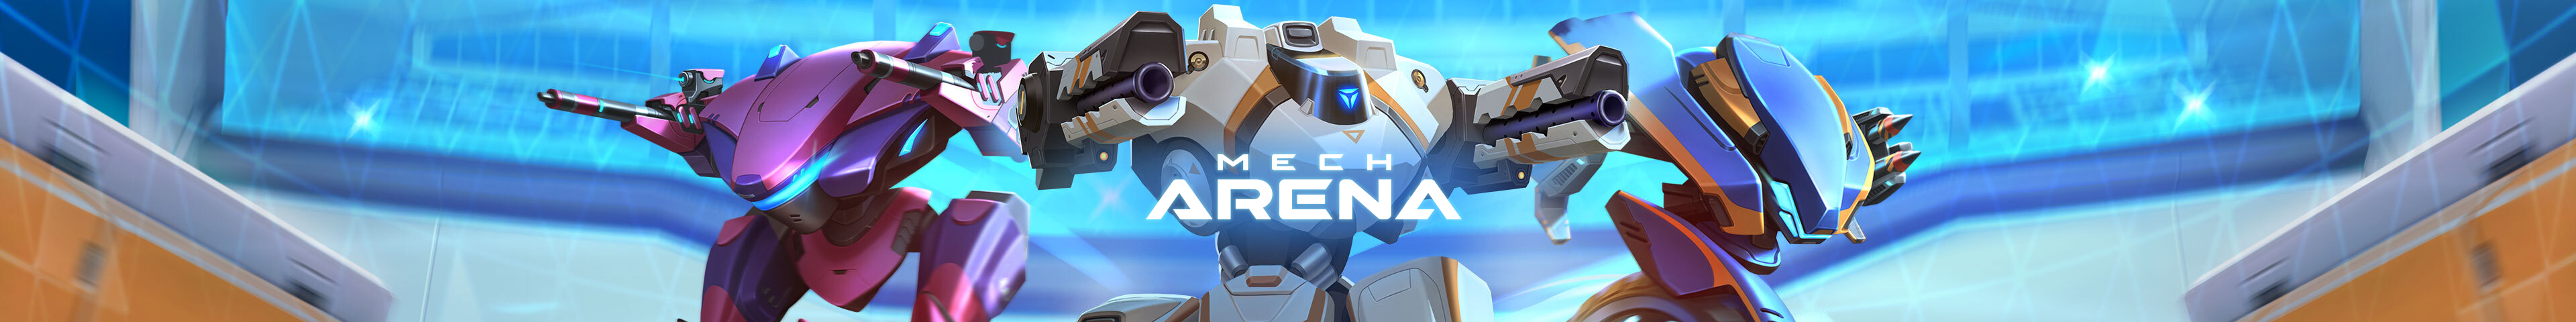 Mech Arena - EN